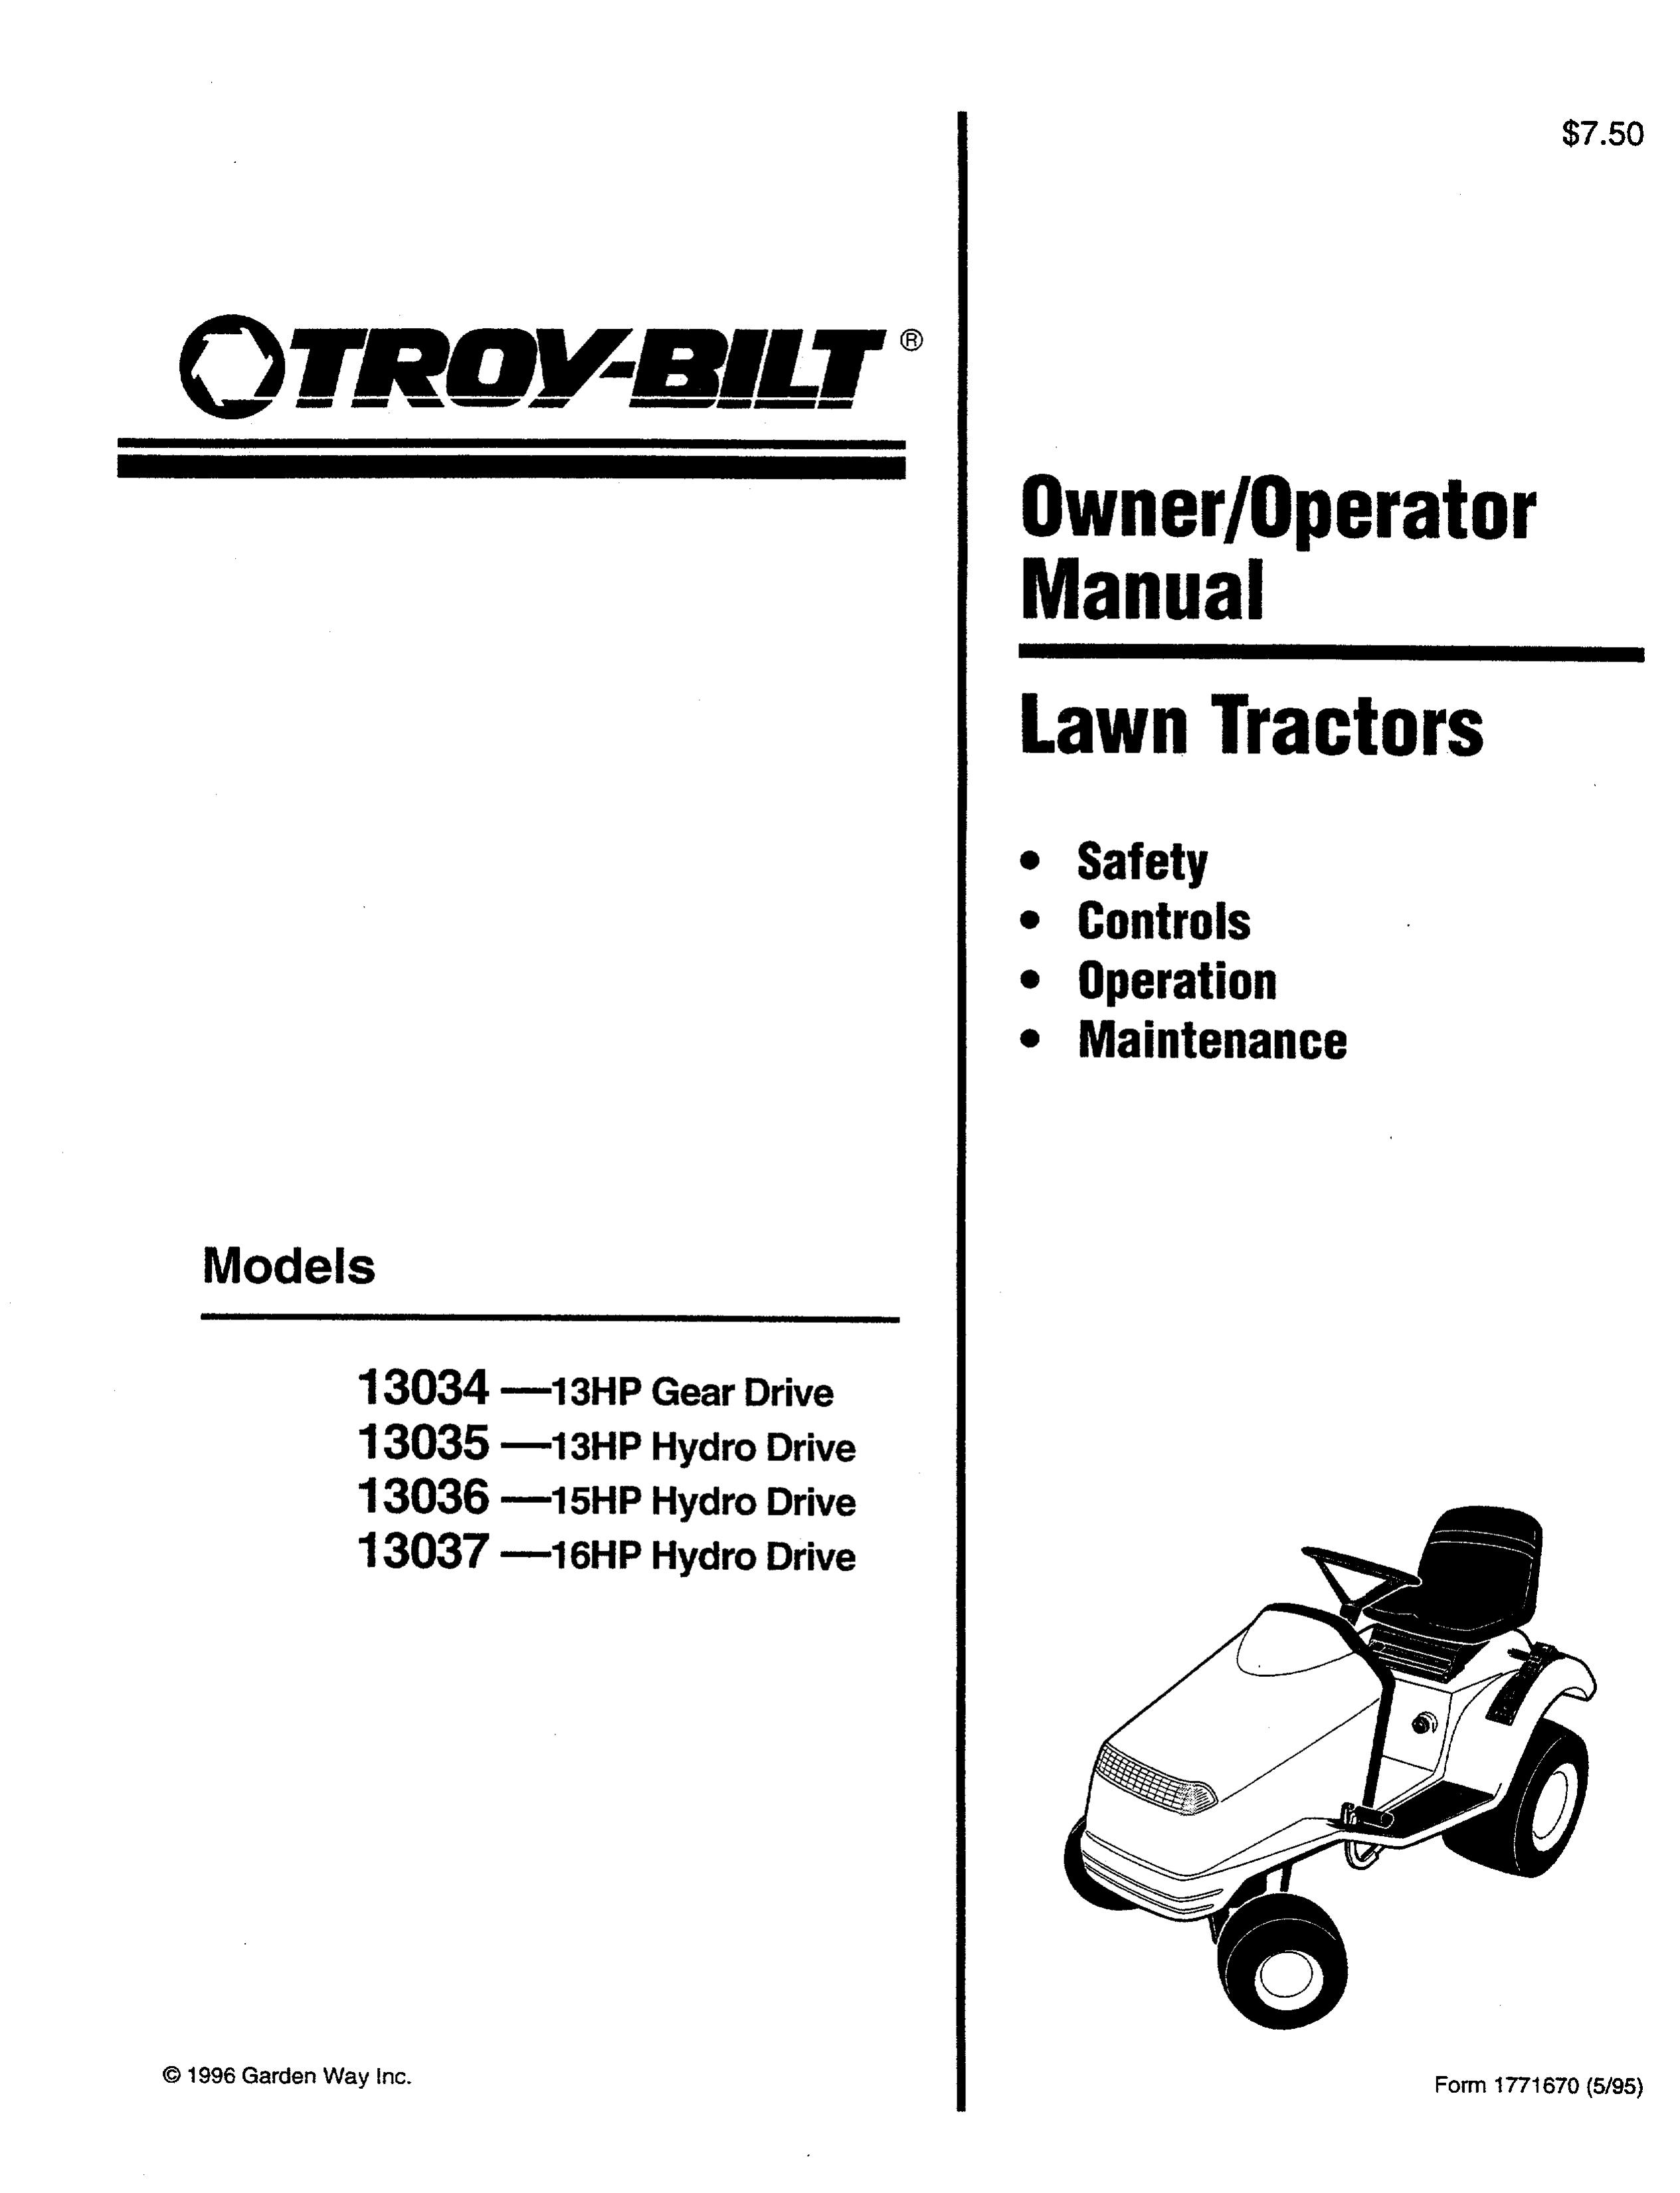 Troy-Bilt 13034 Lawn Mower User Manual